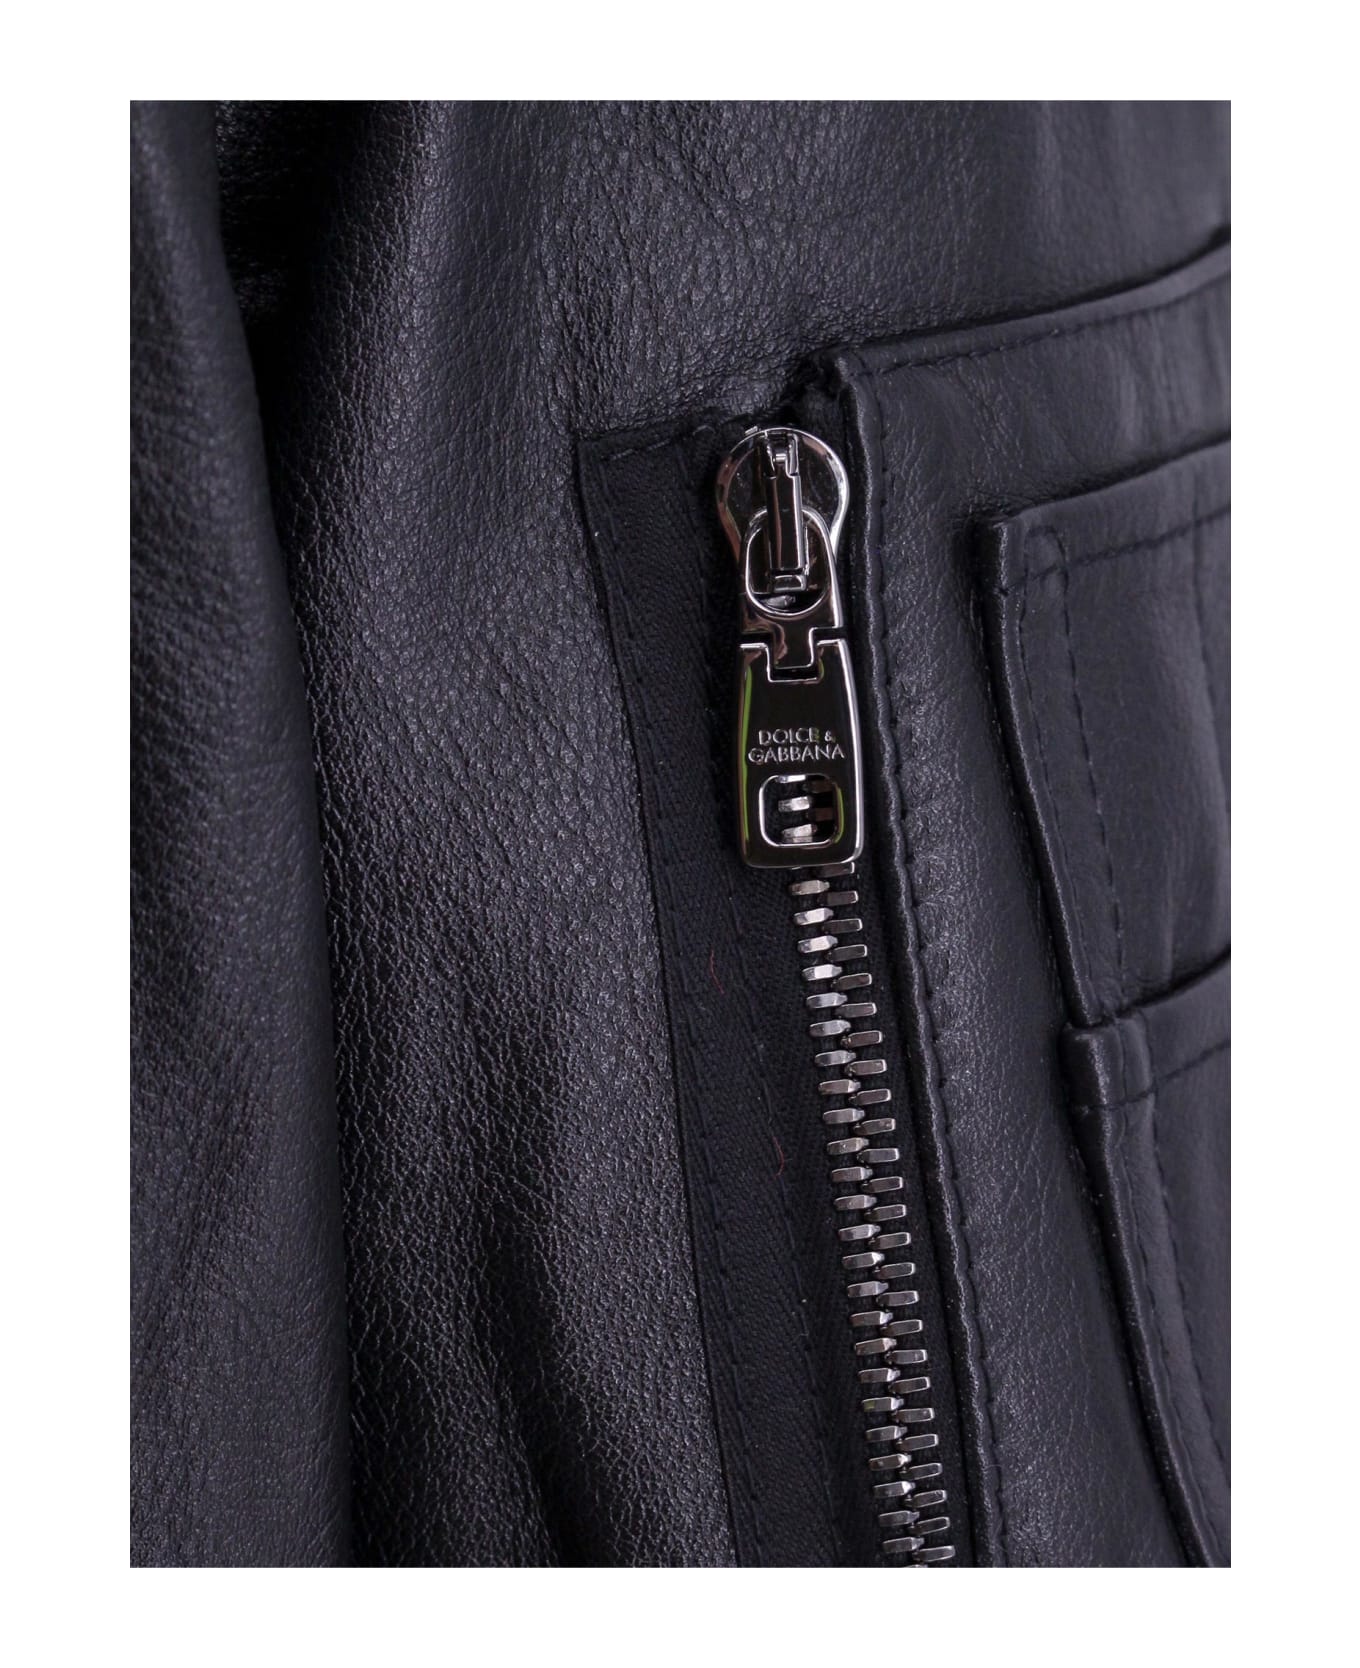 Dolce & Gabbana Leather Jacket - black ジャケット